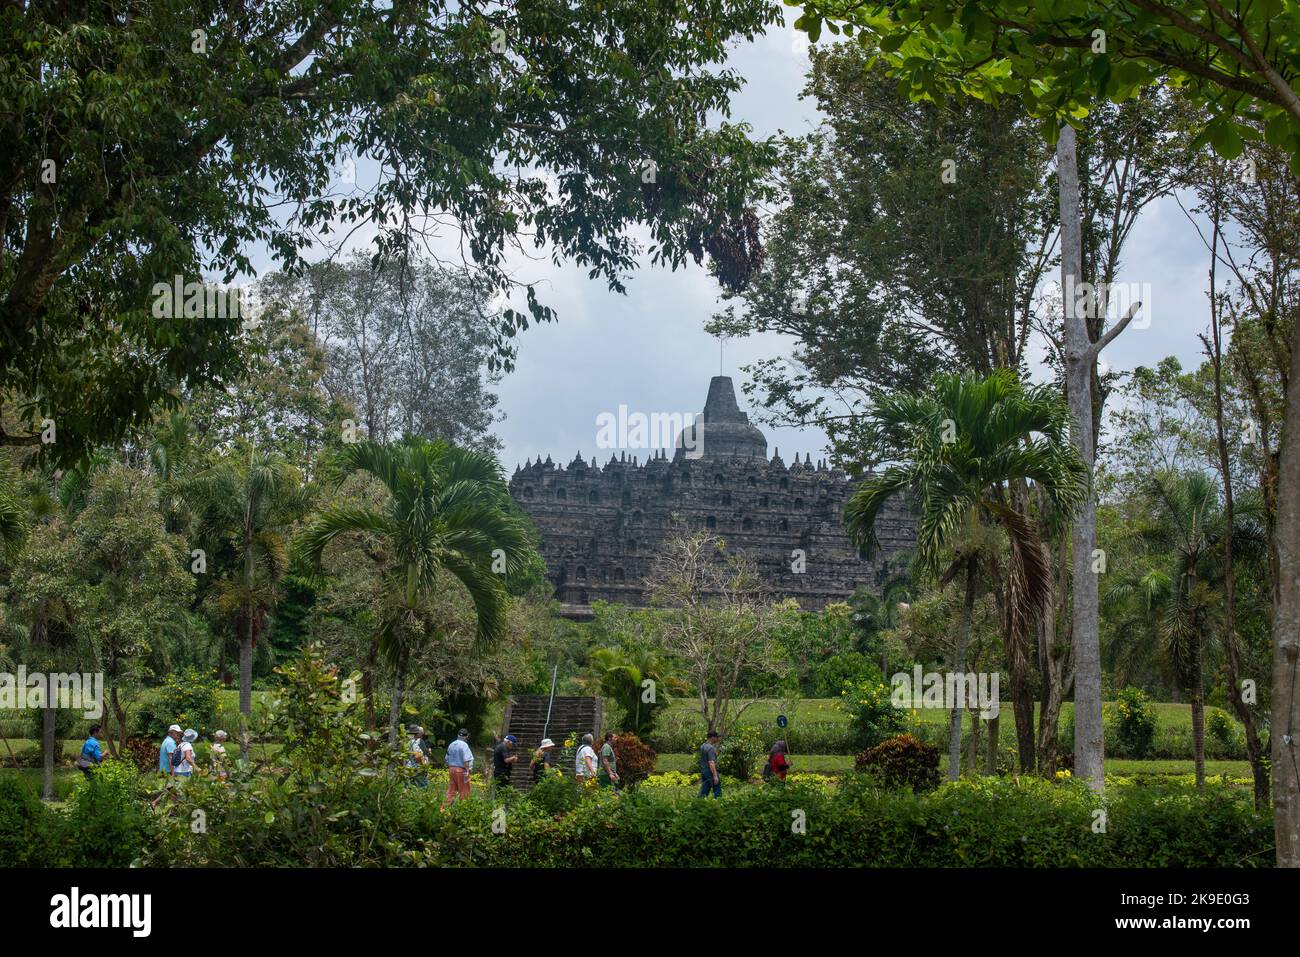 Indonésie, Java, Borobudur. Le plus grand monument bouddhiste du monde, vers 780-840. Patrimoine mondial de l'UNESCO. Banque D'Images